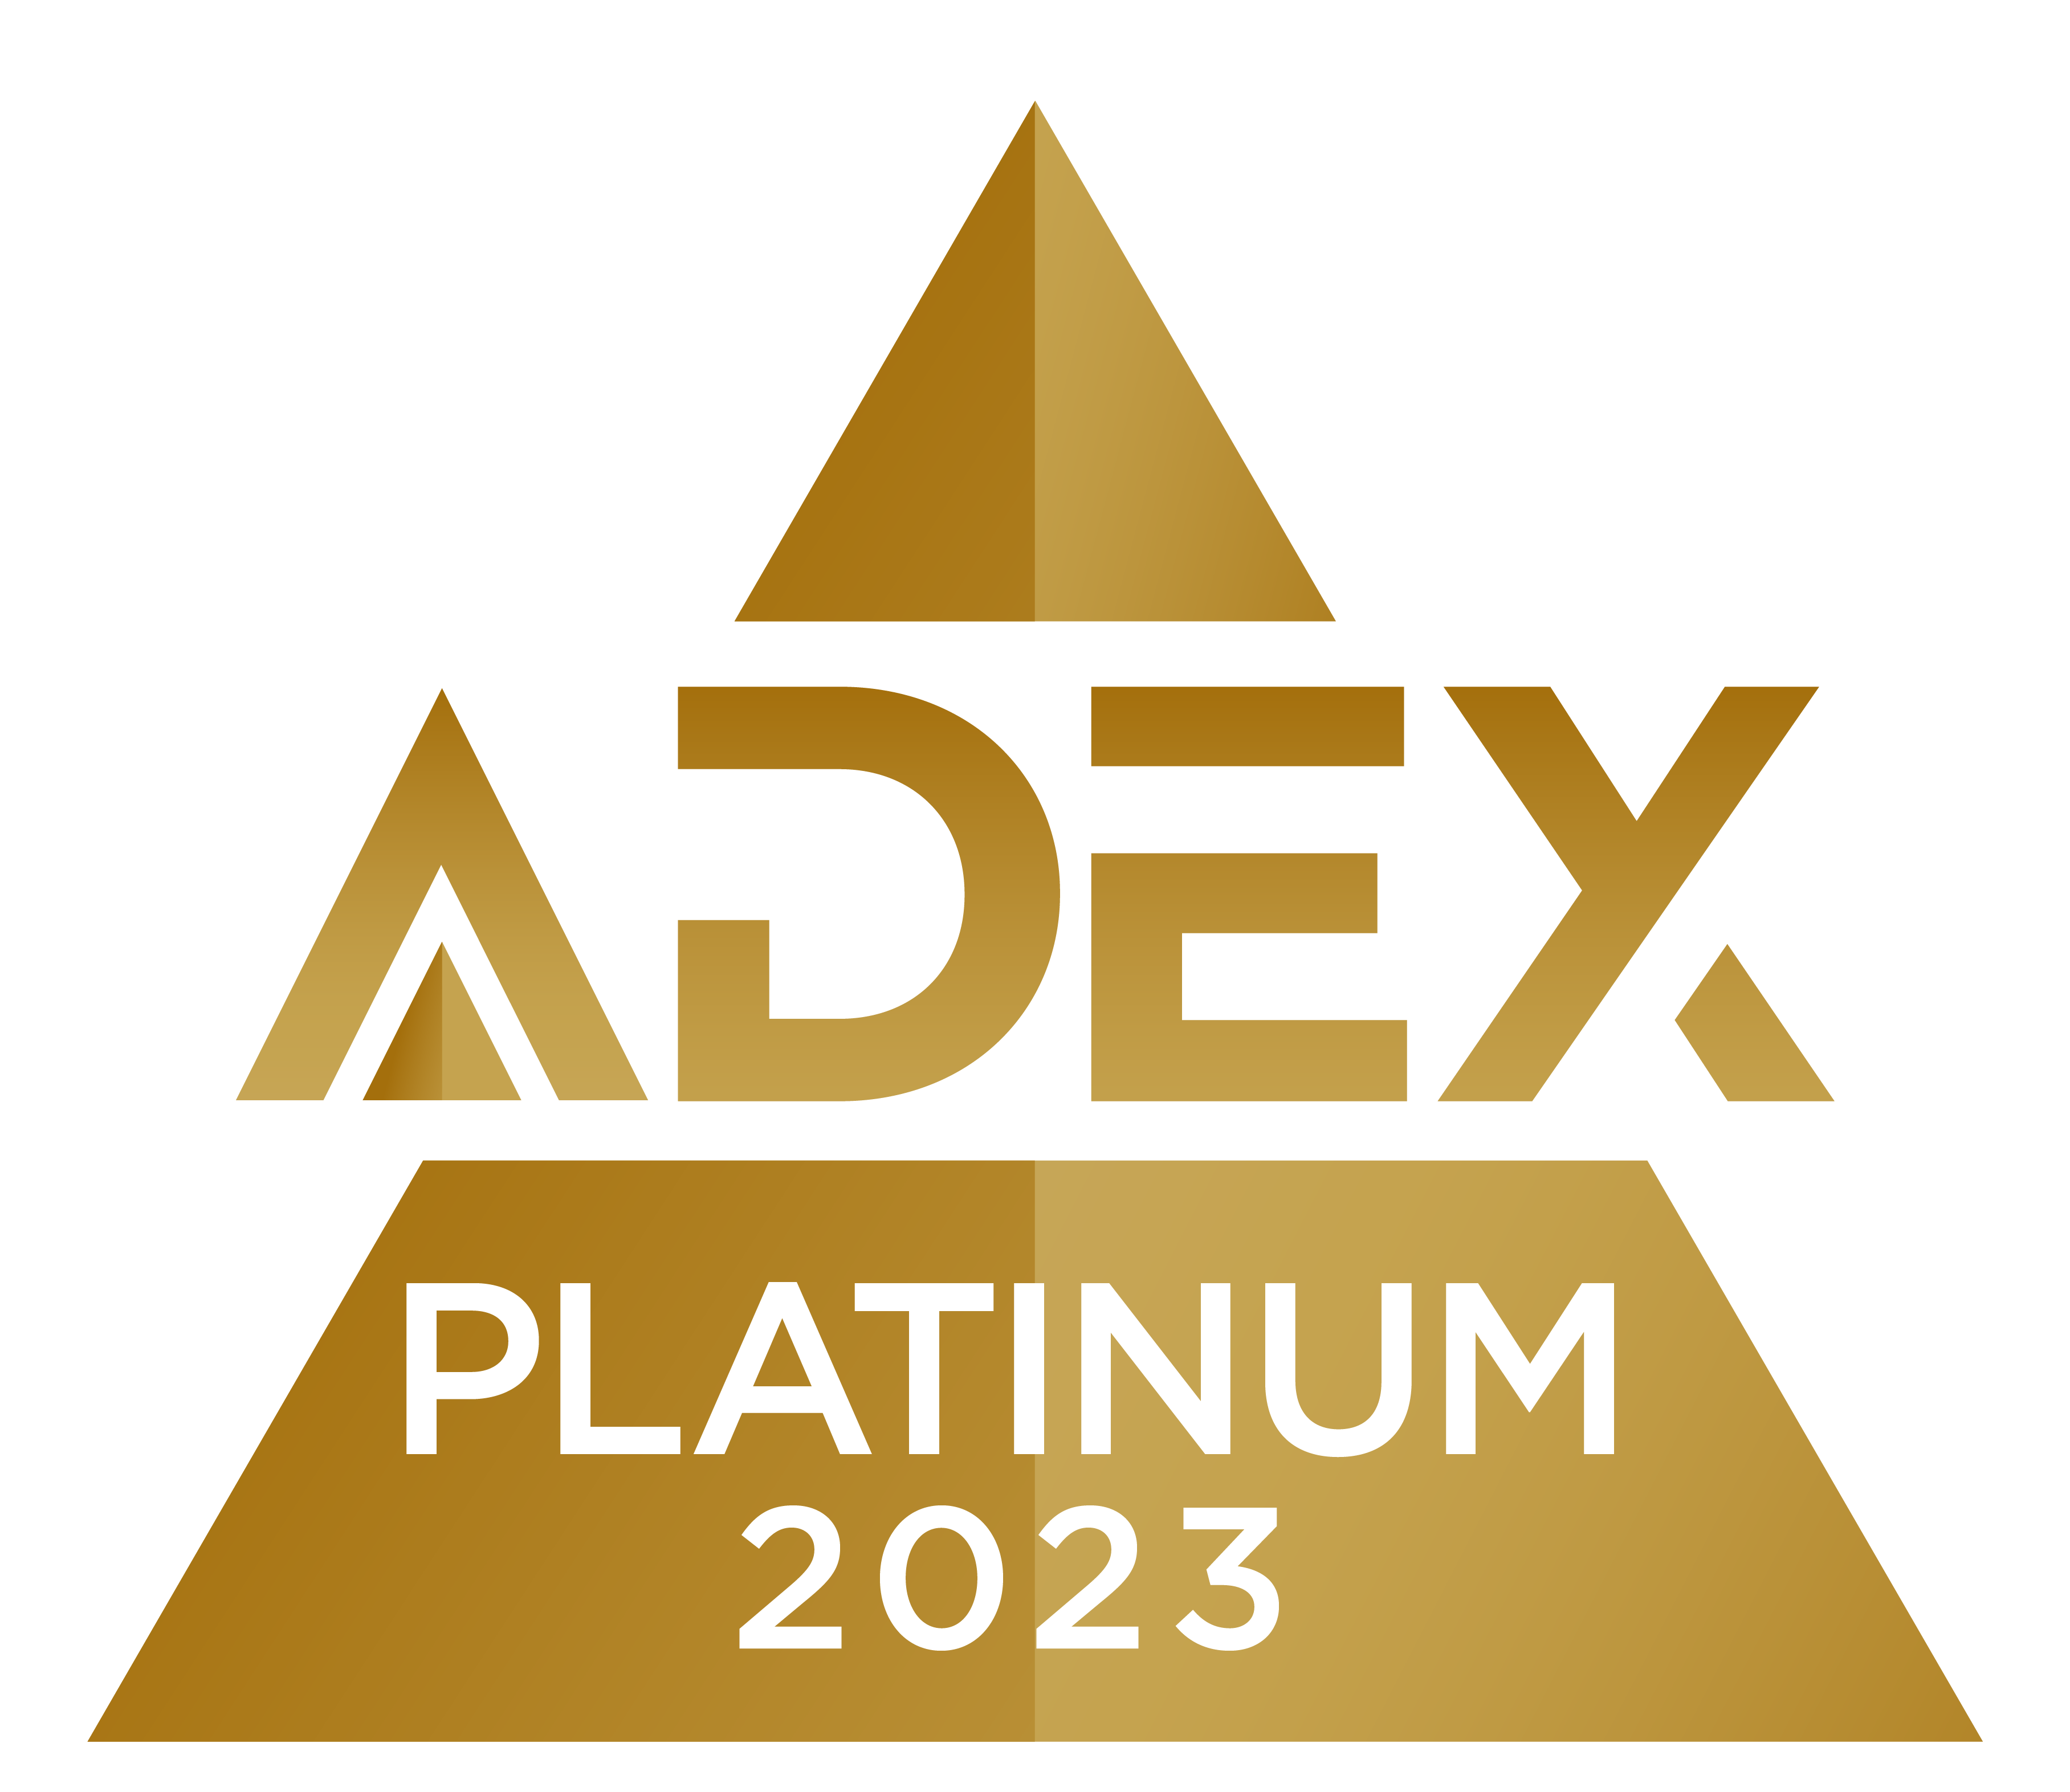 Adex Platinum 2023 logo